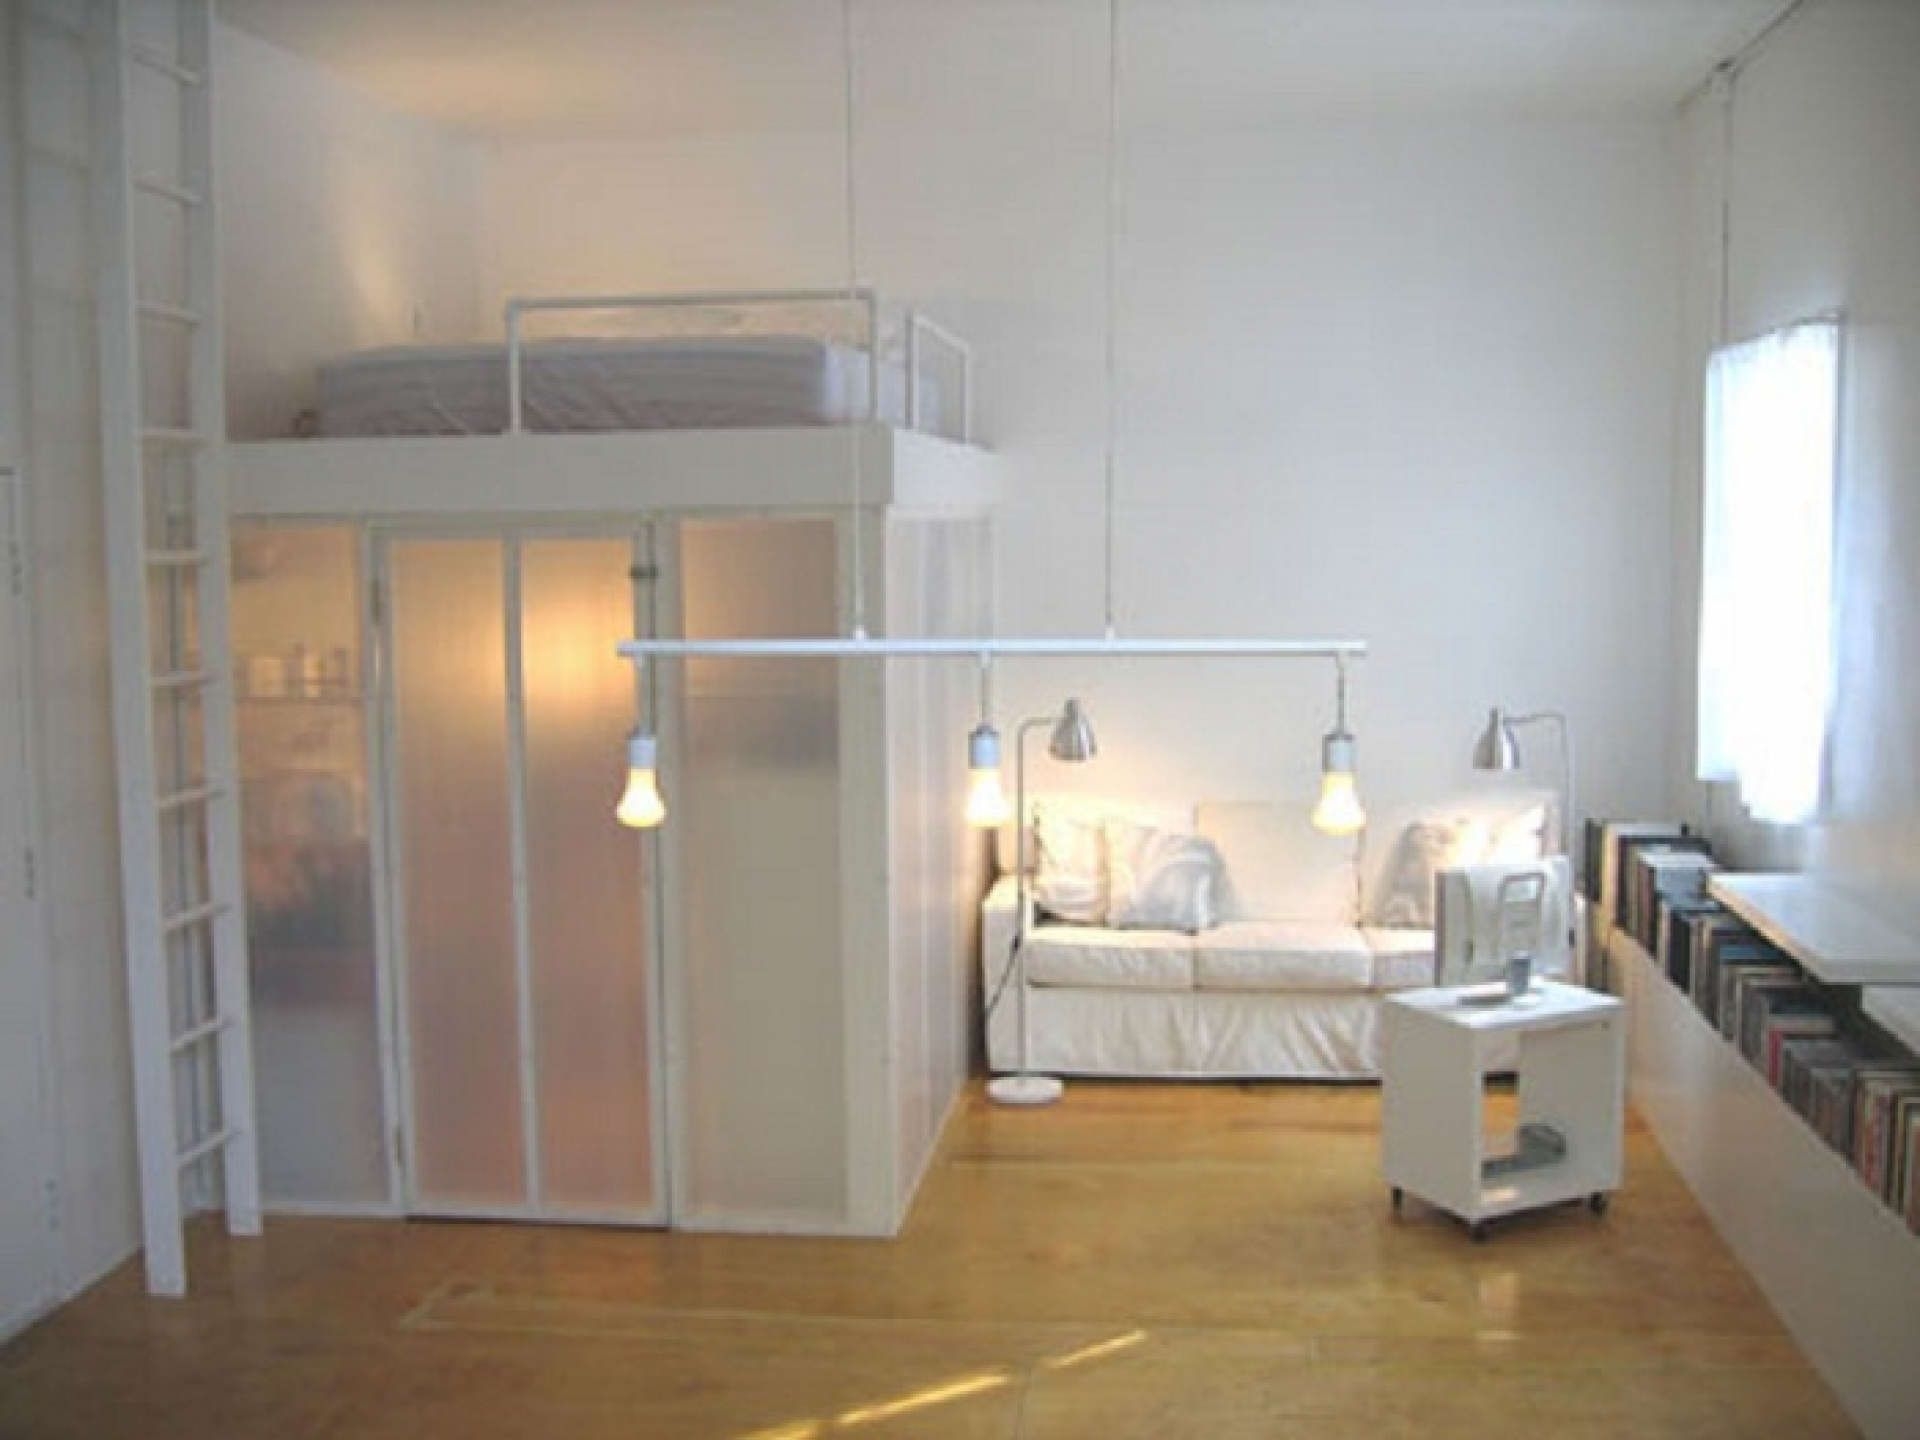 White loft bed desk